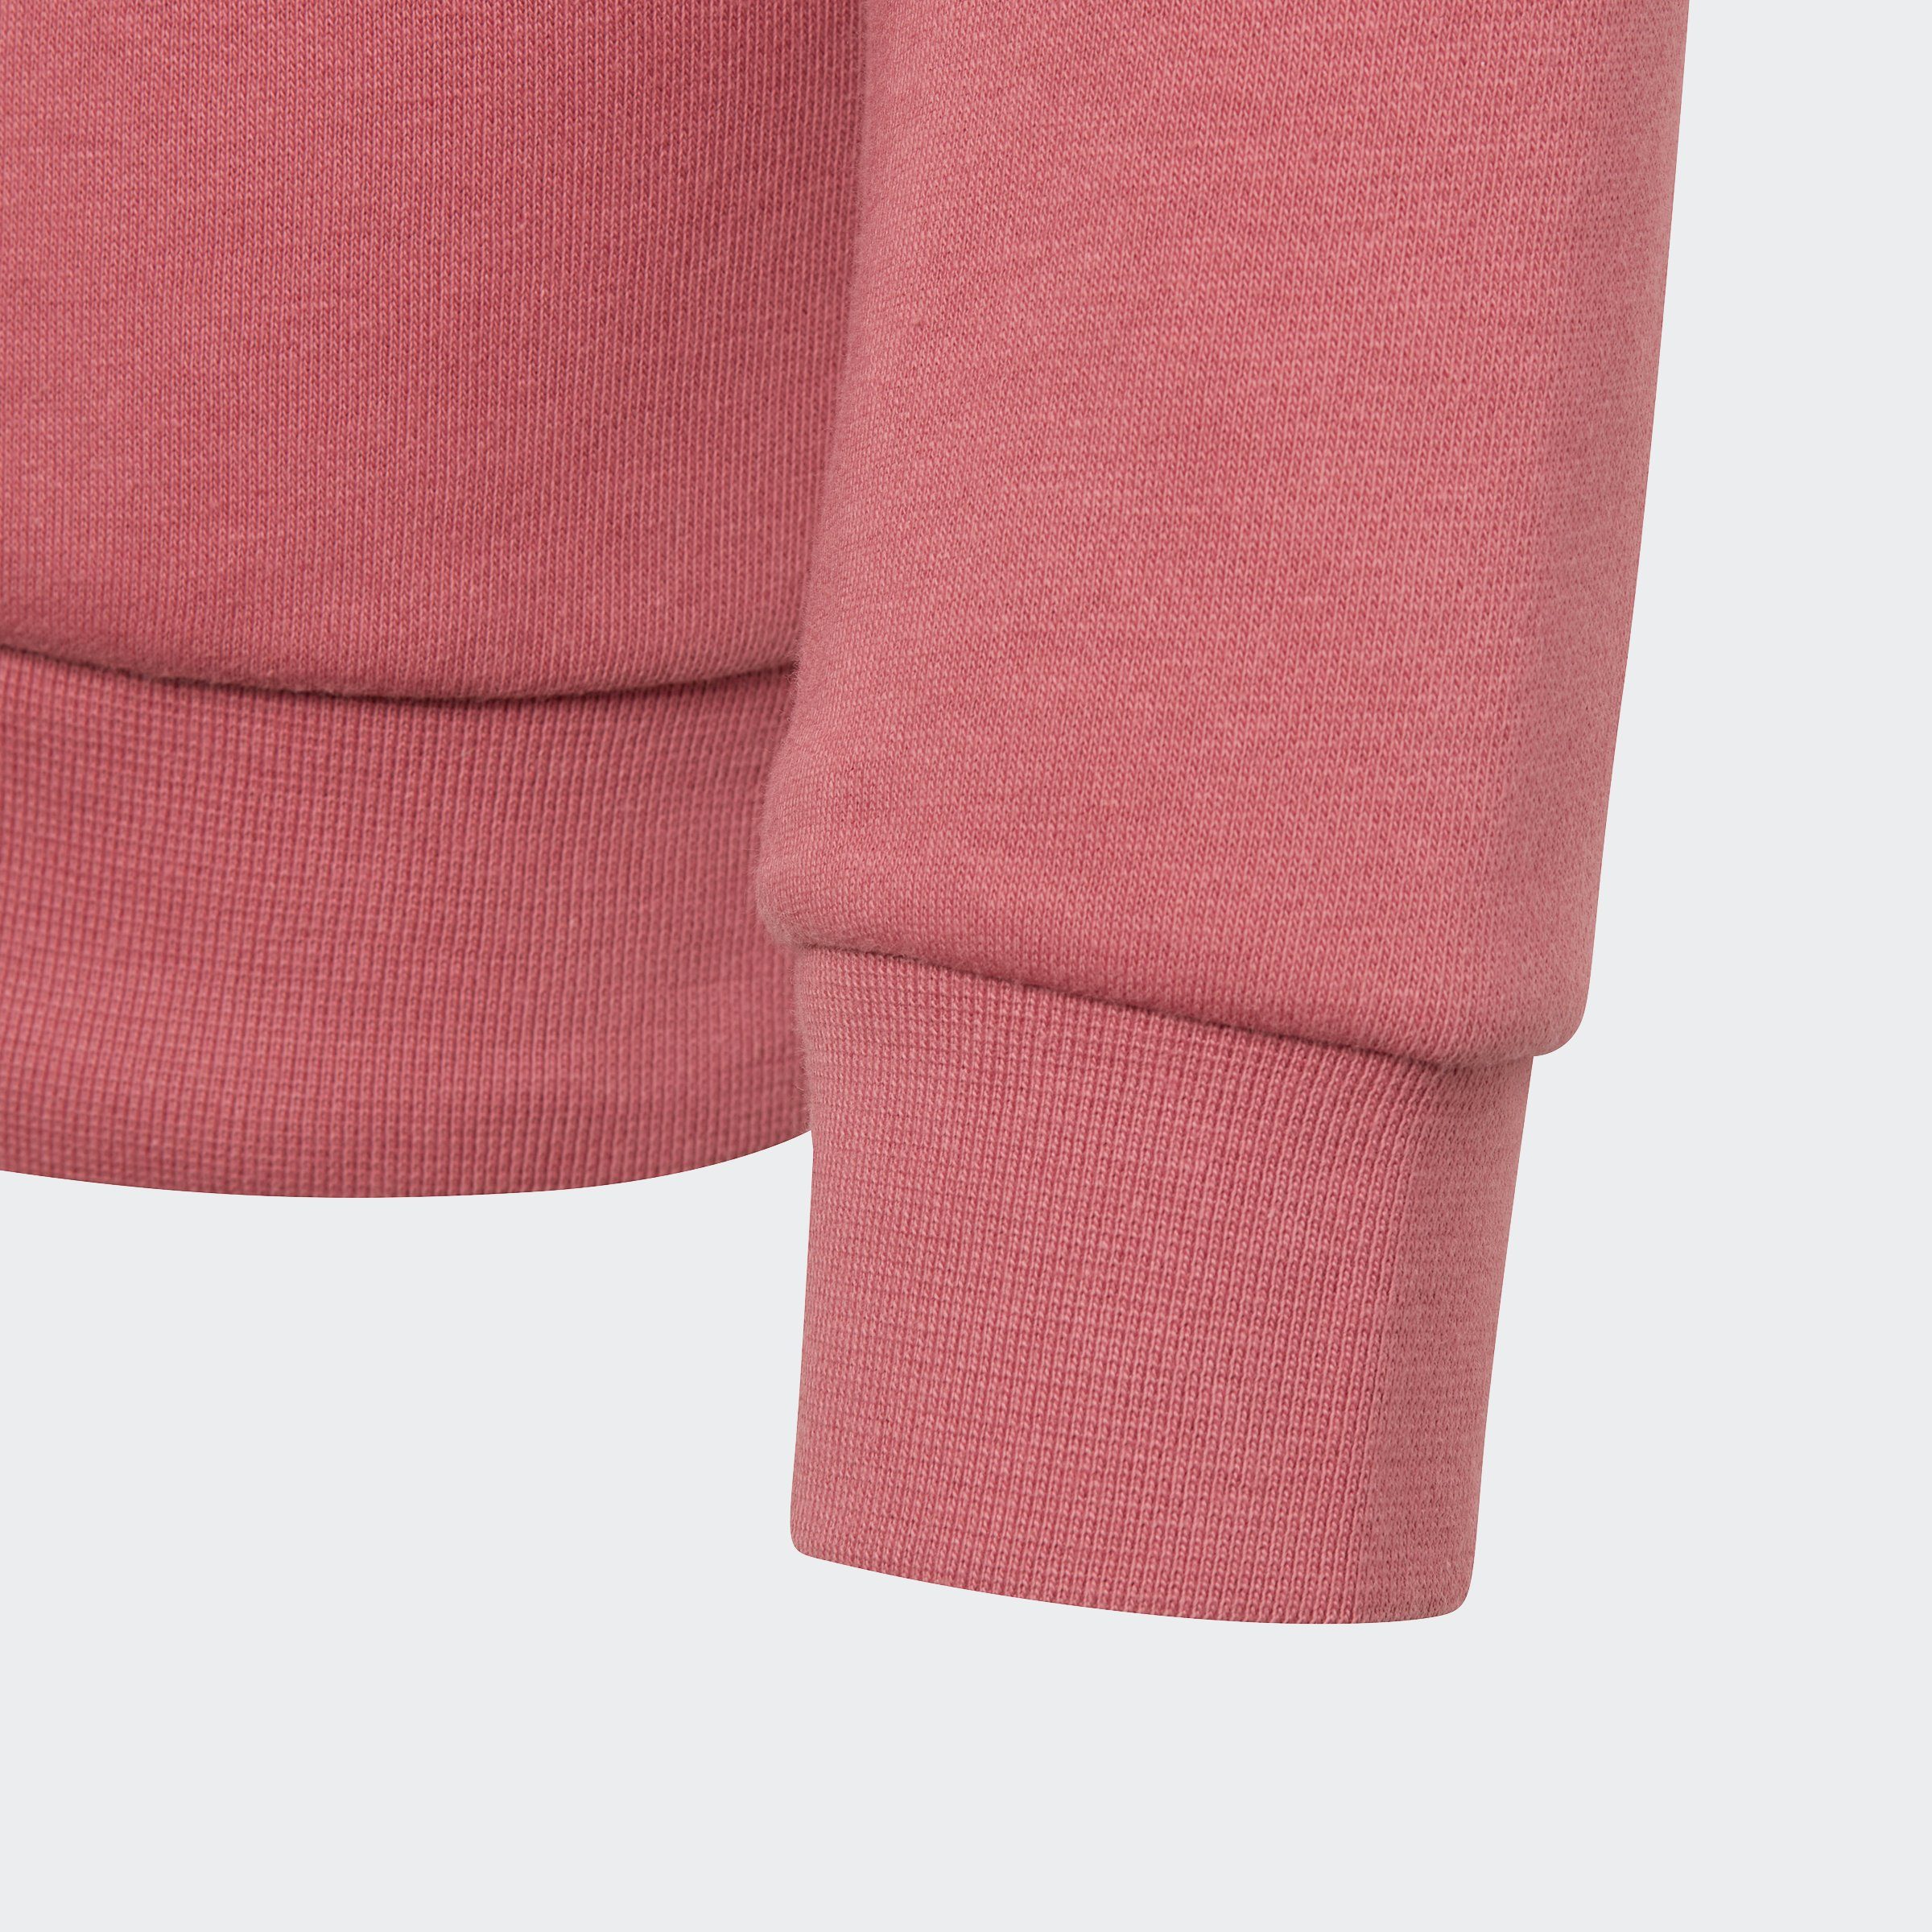 Sweatshirt Pink ADICOLOR Strata adidas Originals